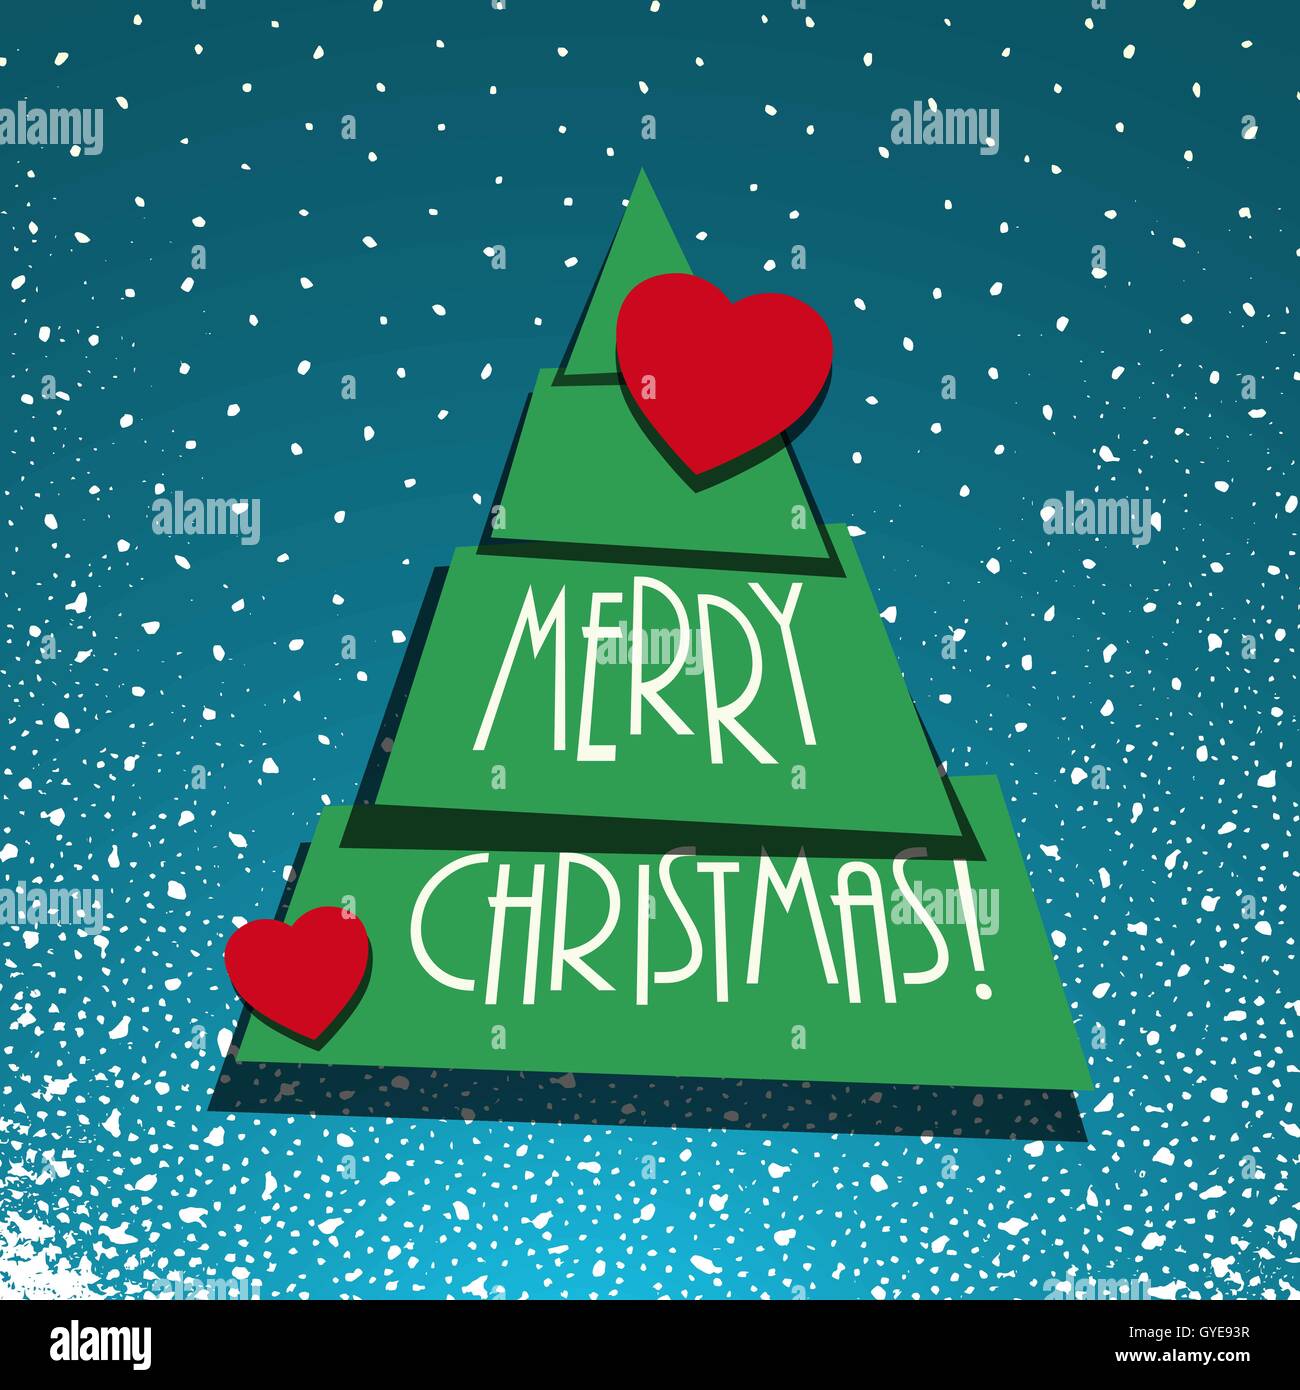 Weihnachtsbaum mit Herzsymbol auf blaue Schneeflocken Hintergrund merry Xmas-Vektor-illustration Stock Vektor